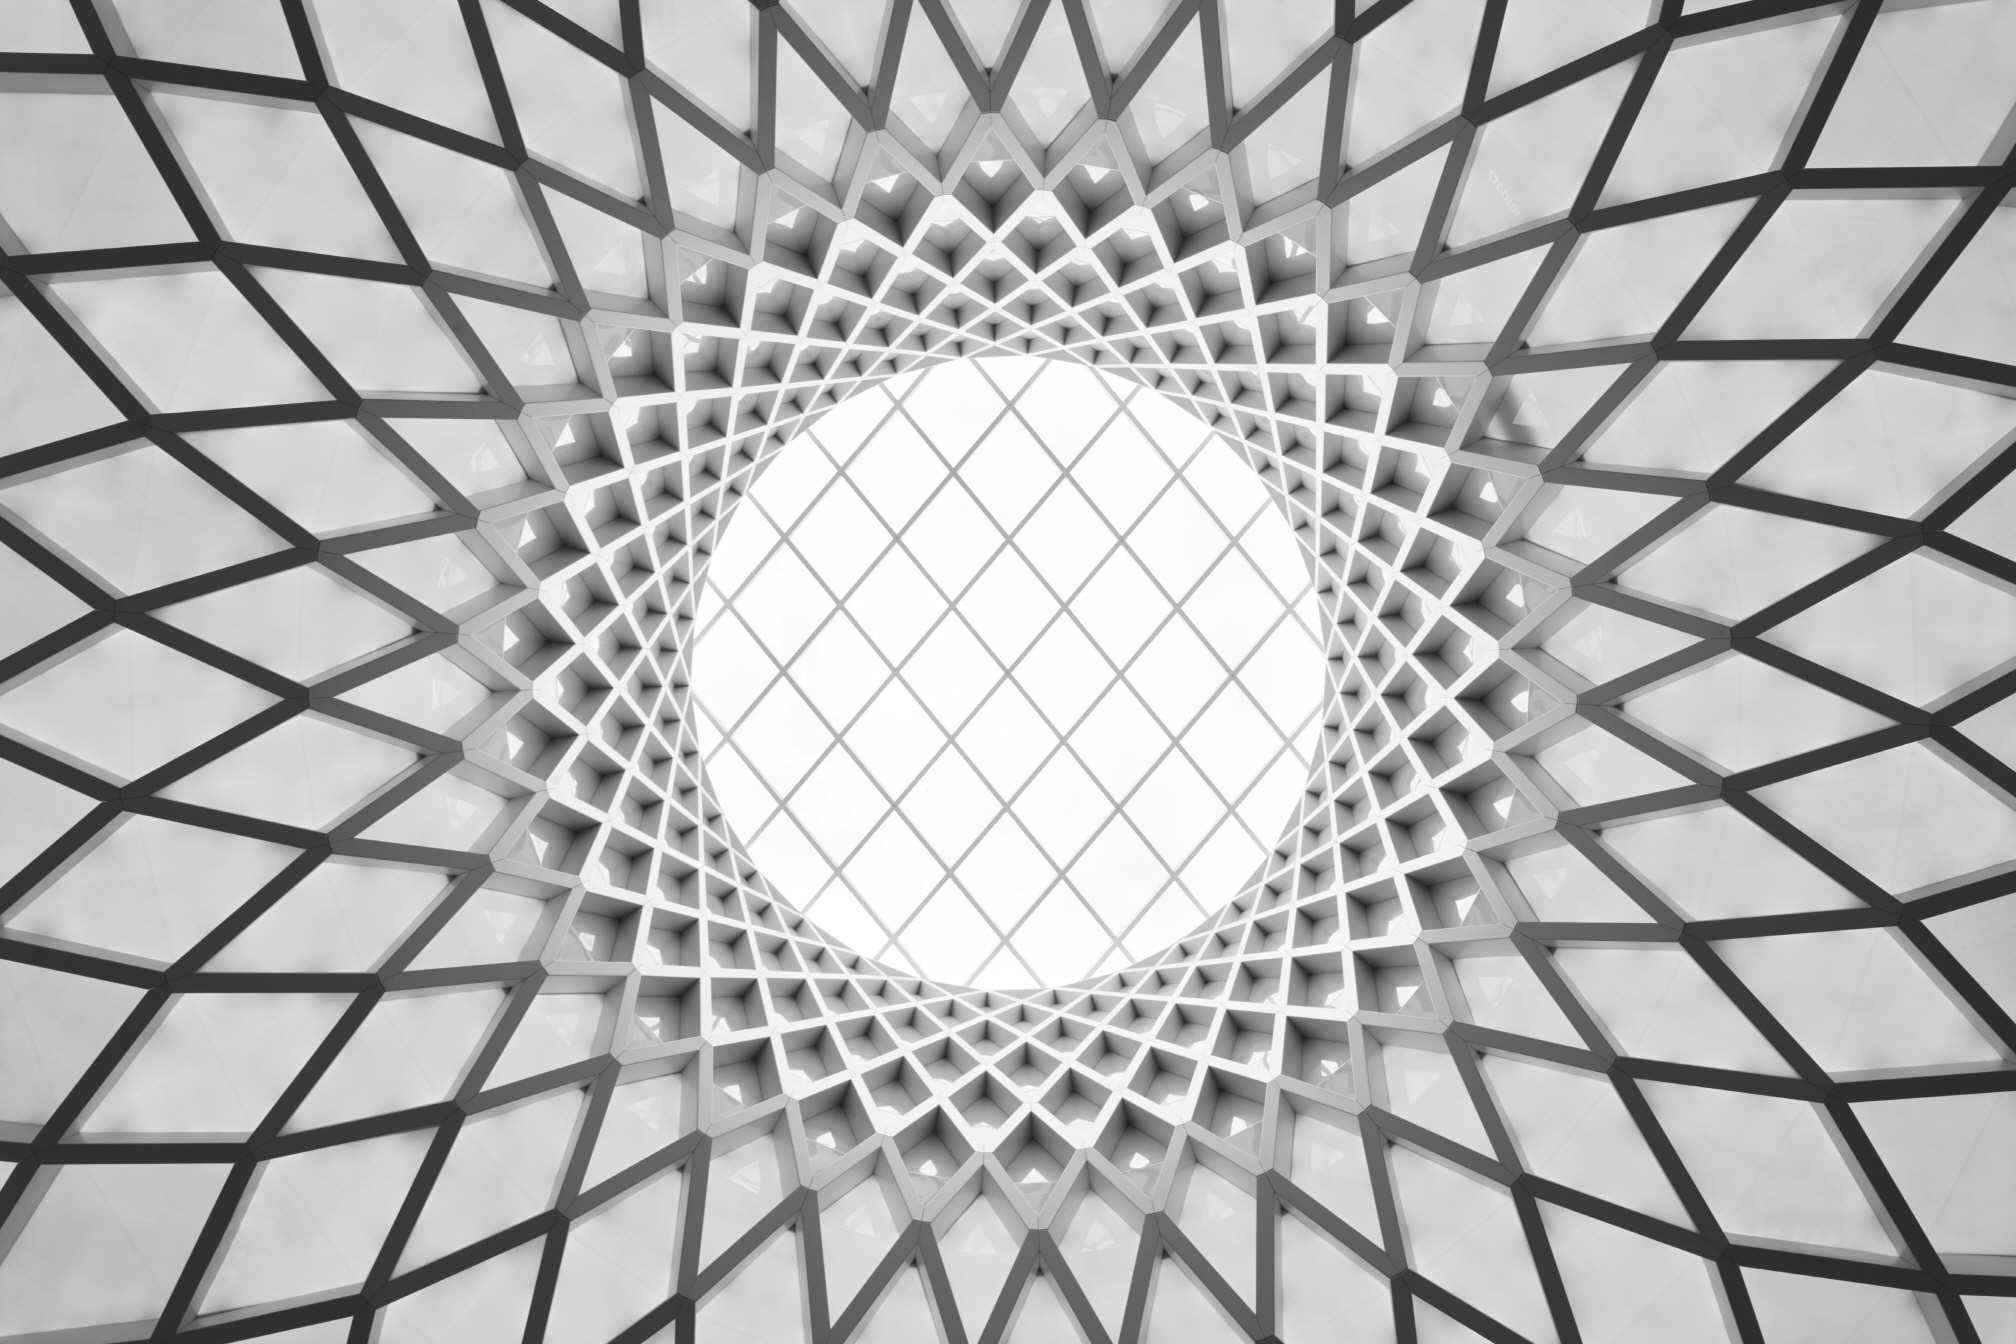 〔안정원의 건축 칼럼〕 지역의 맥락성을 고려한 입체적인 파사드와 다이어그리드 패턴 공간 3